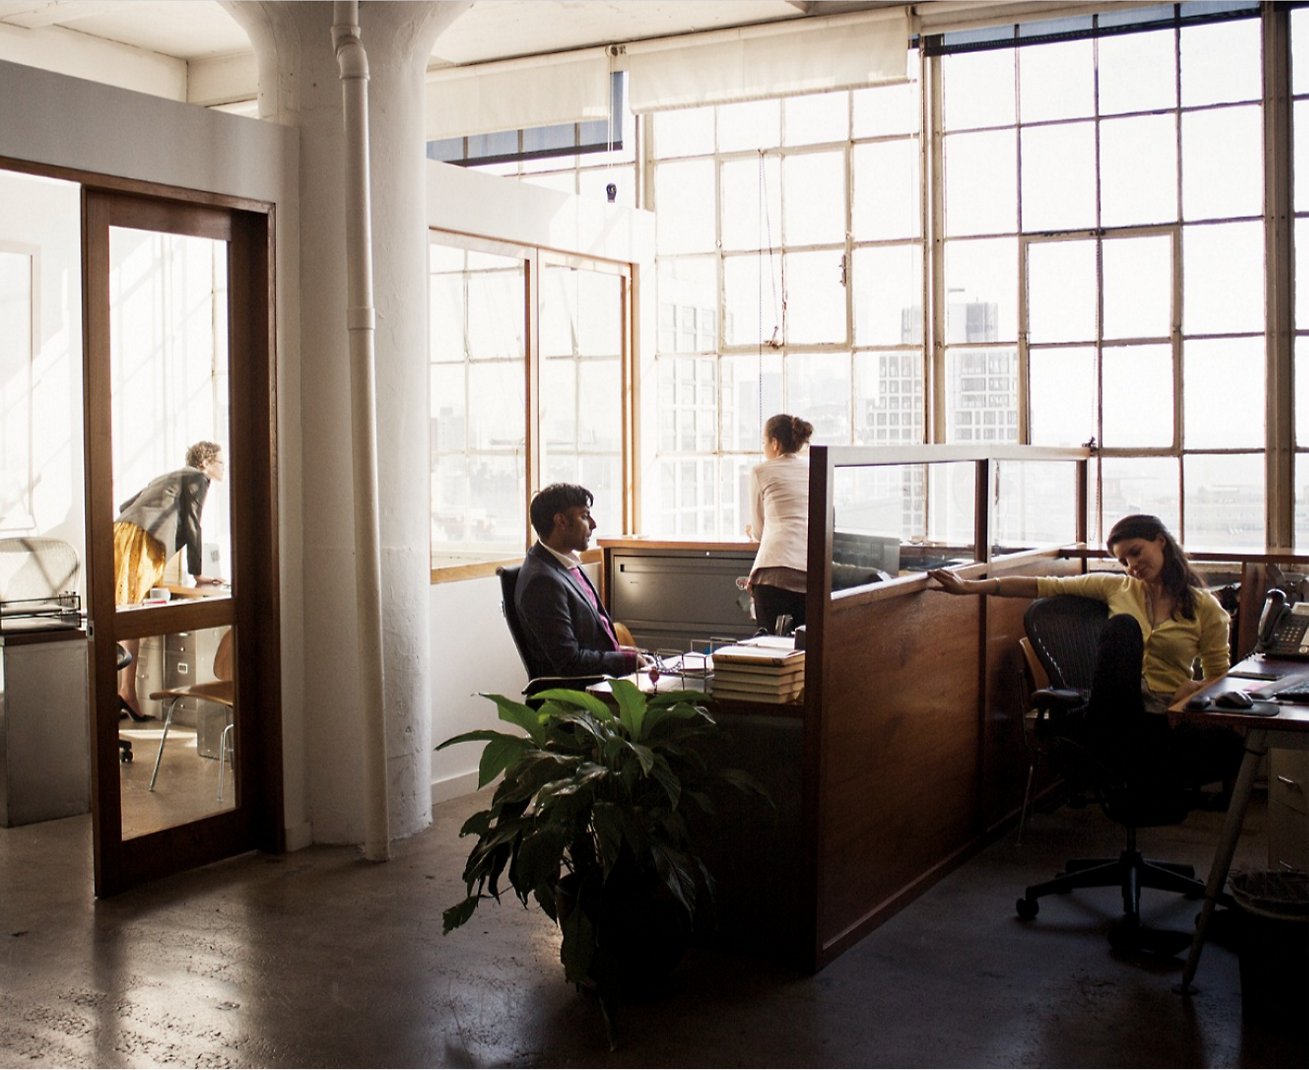 صورة تظهر مجموعة من الأشخاص يجلسون على مكاتب داخل مكتب.